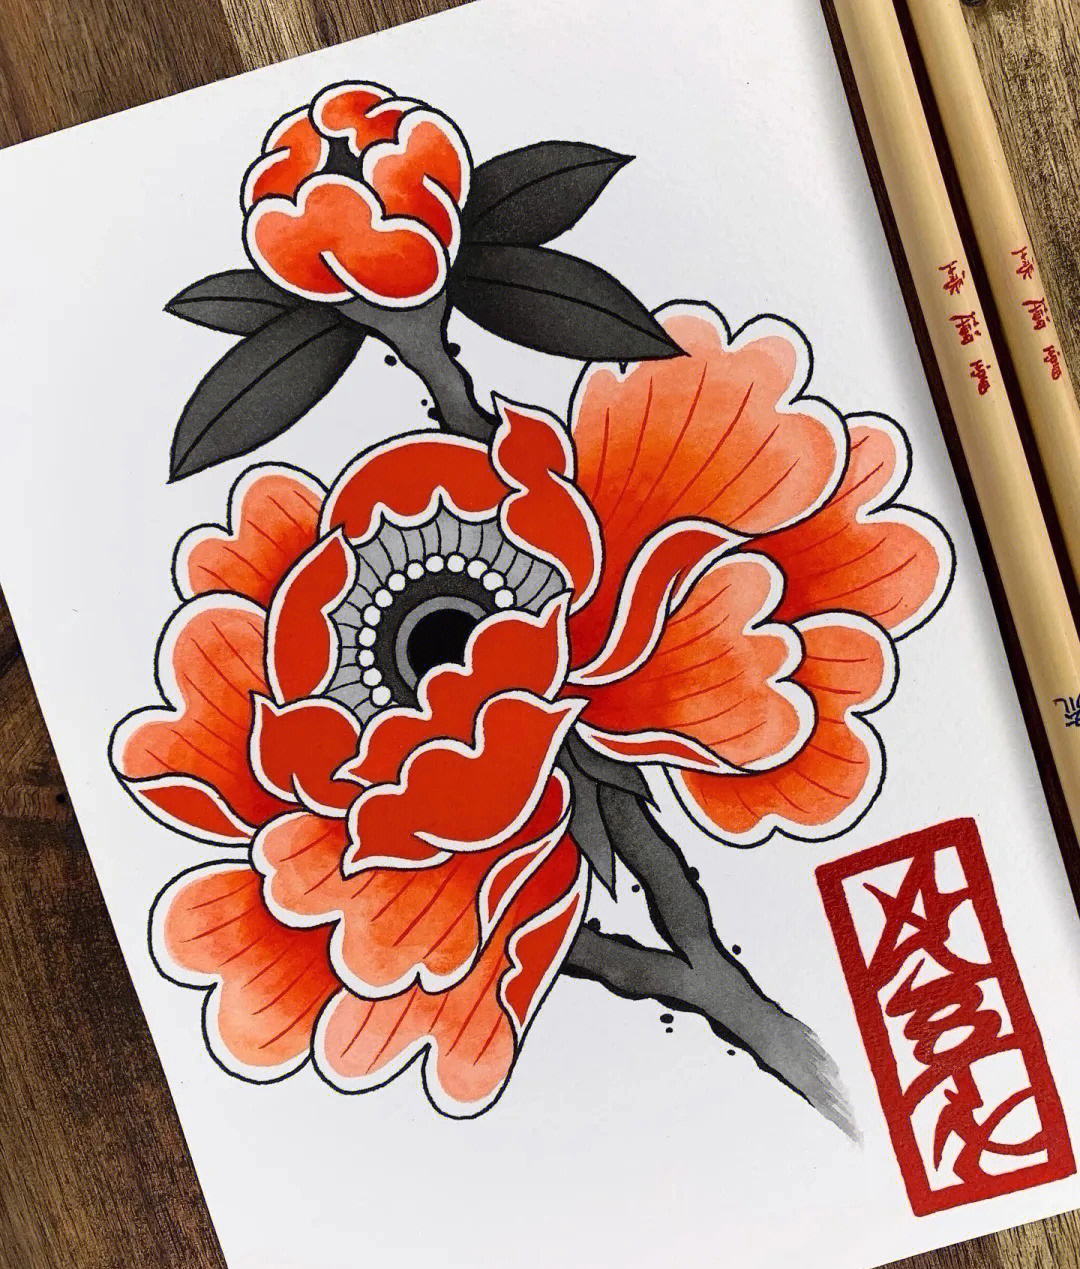 太原纹身日式老传统纹身手稿分享